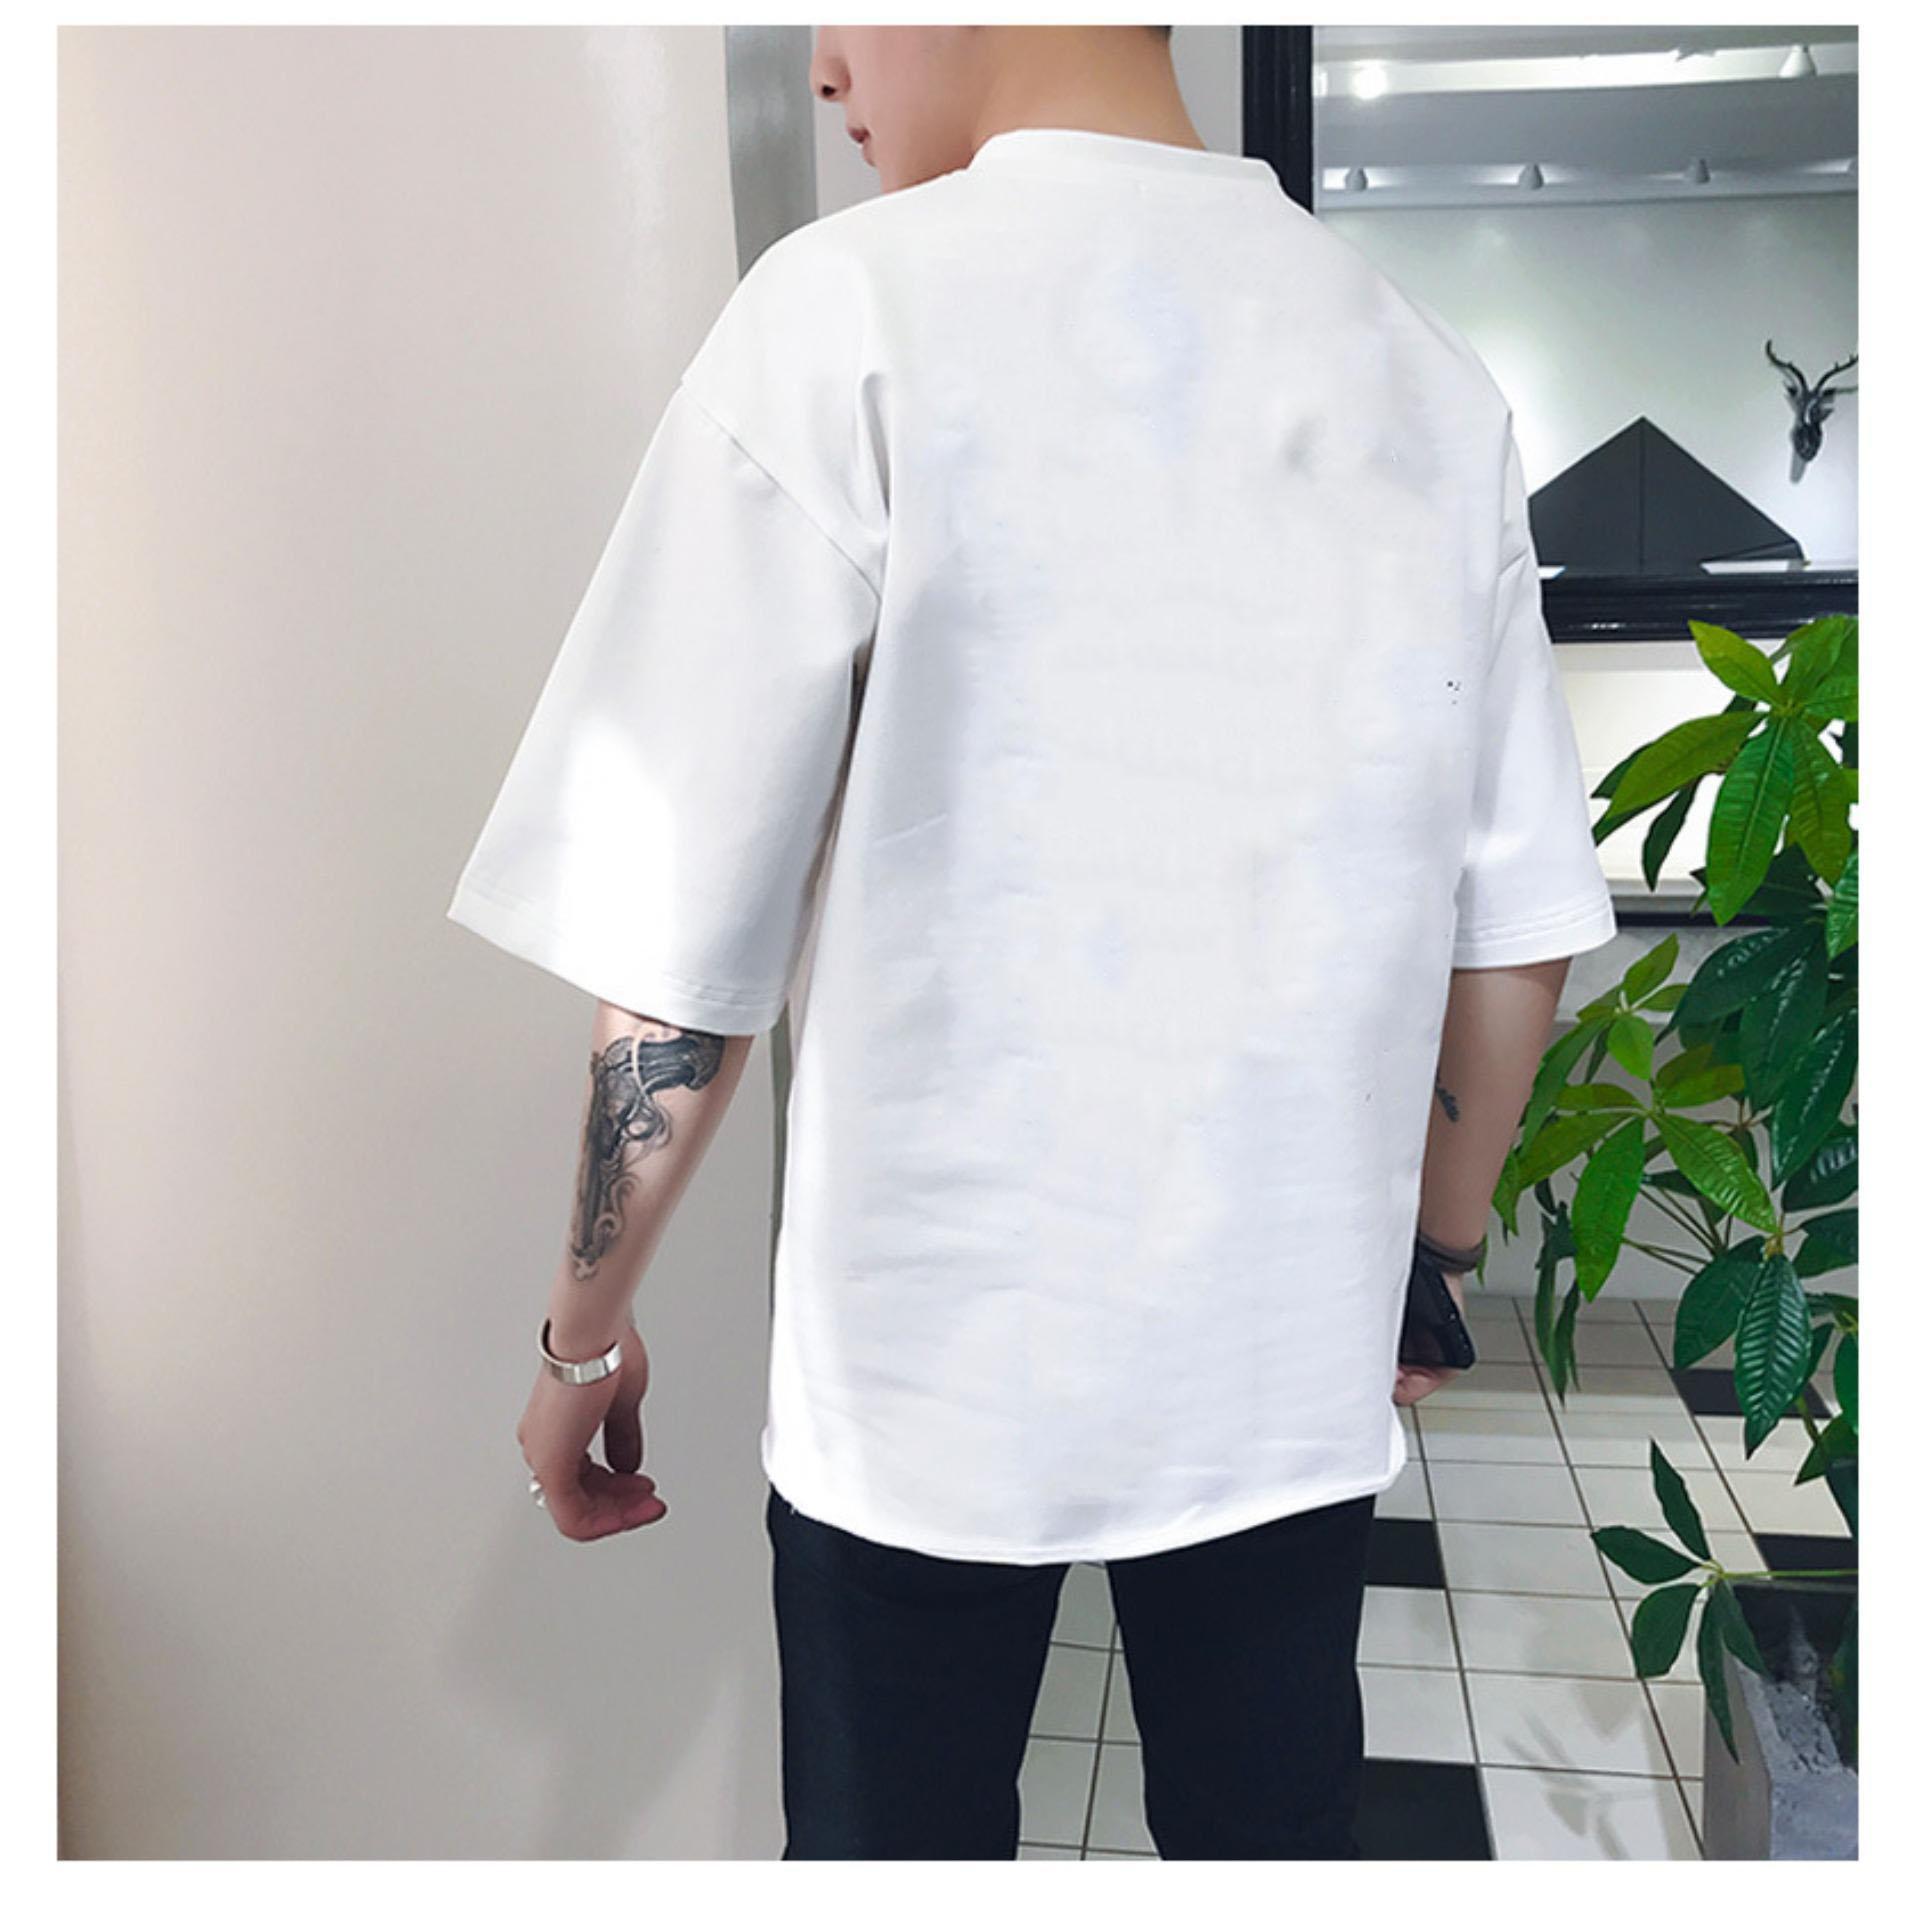 XẢ HÀNG - ĐỒNG GIÁ 19K  Áo thun nam Hàn Quốc form rộng in hình Chữ Sorry cách điệu vải dày mịn mát